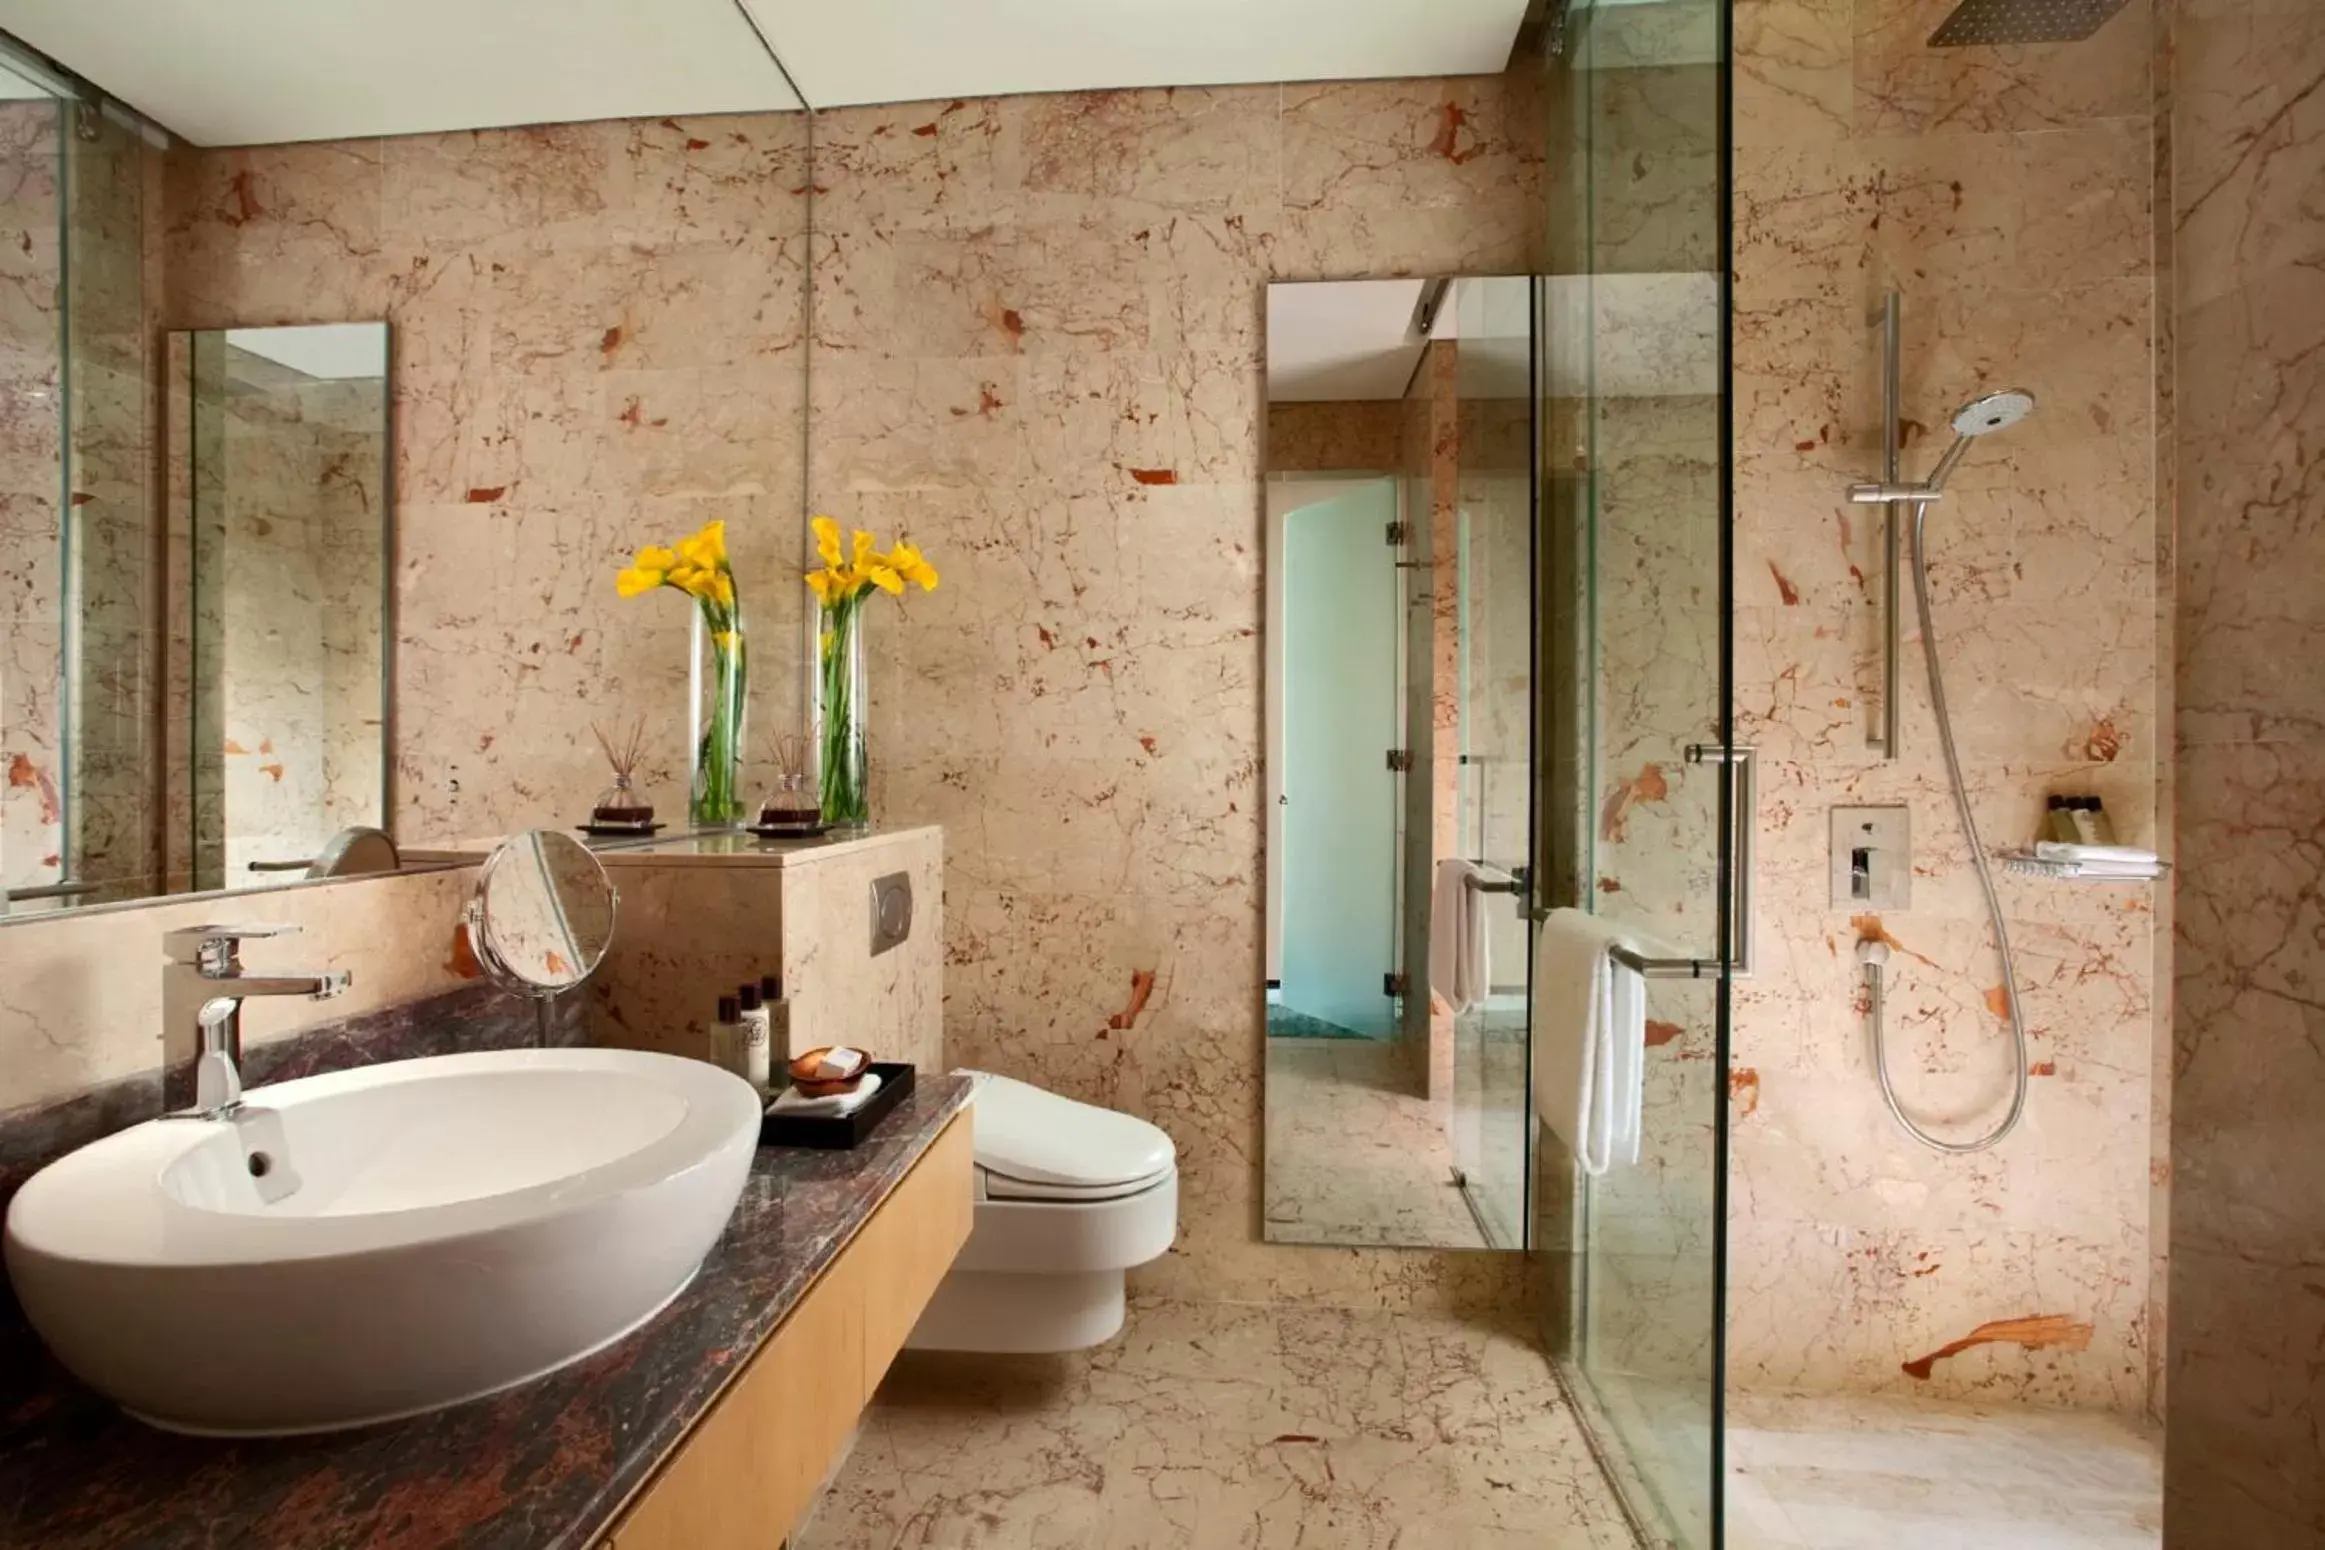 Bathroom in Resorts World Sentosa - Equarius Villas